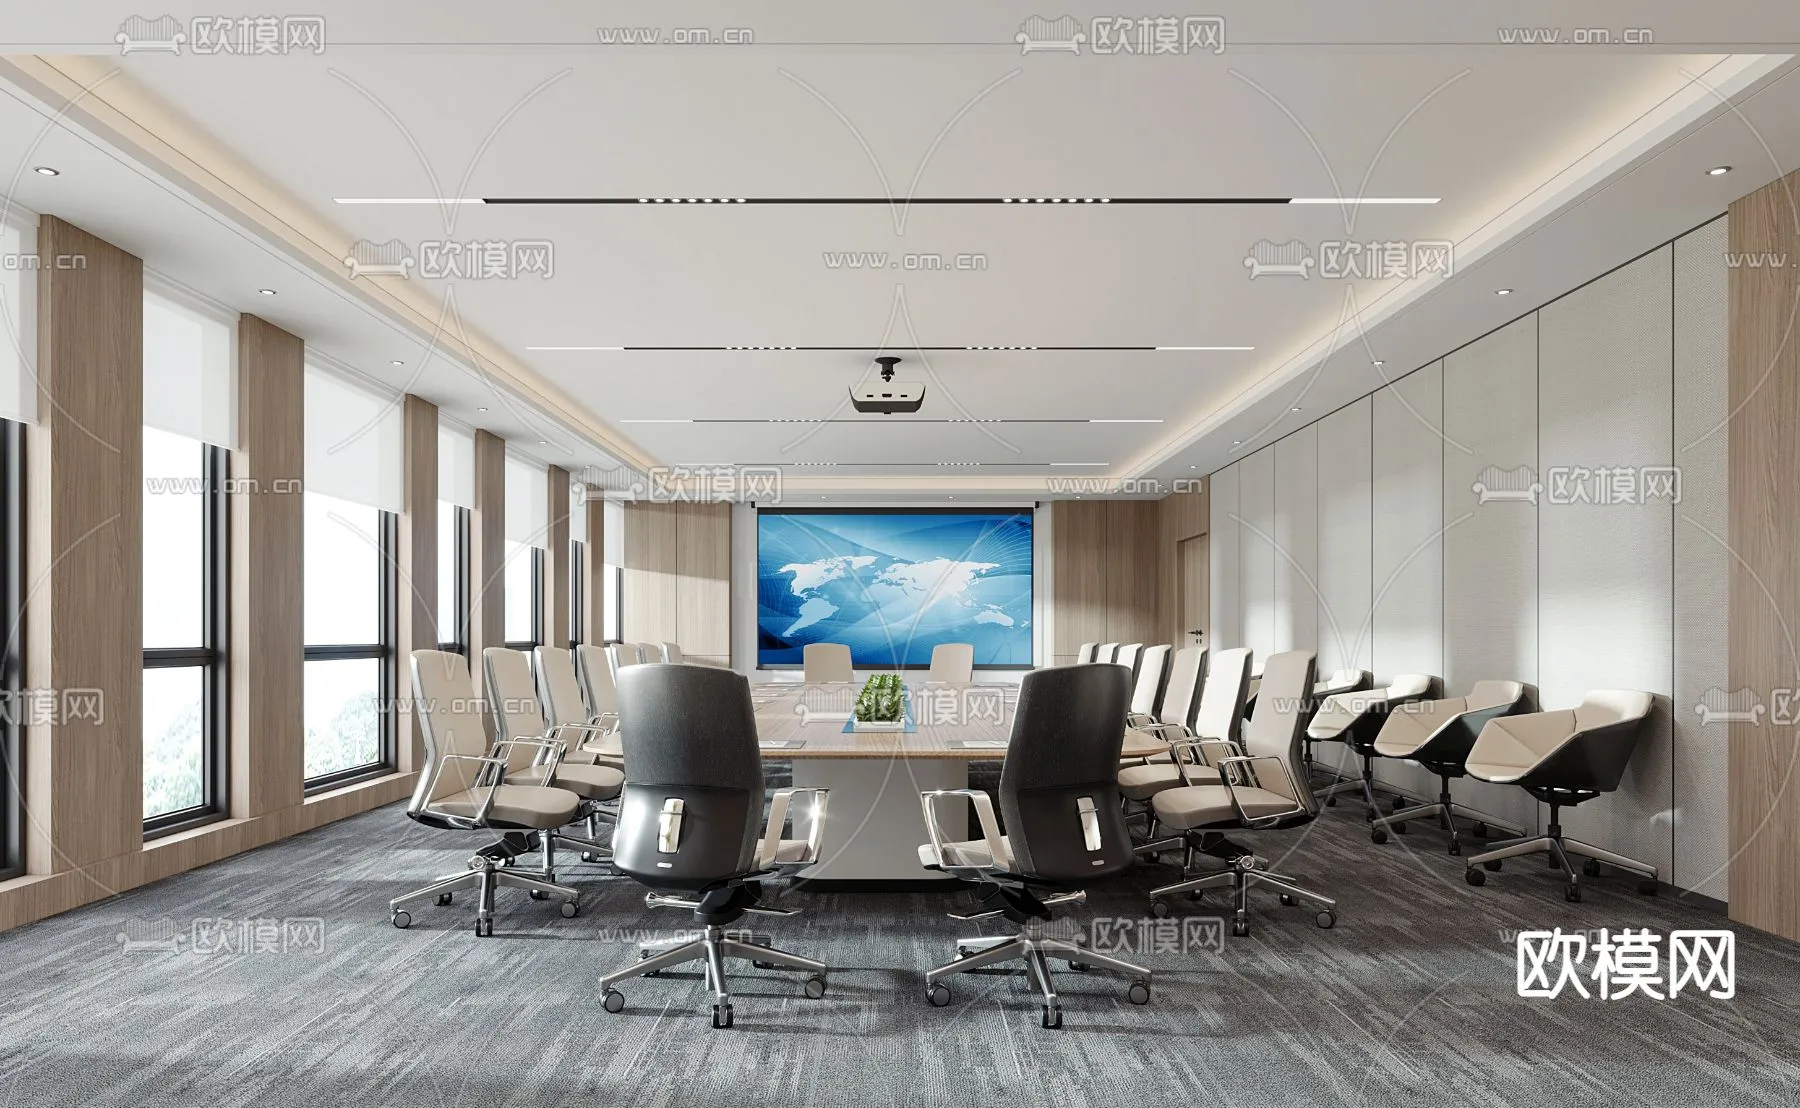 Meeting Room 3D Scenes – 1499